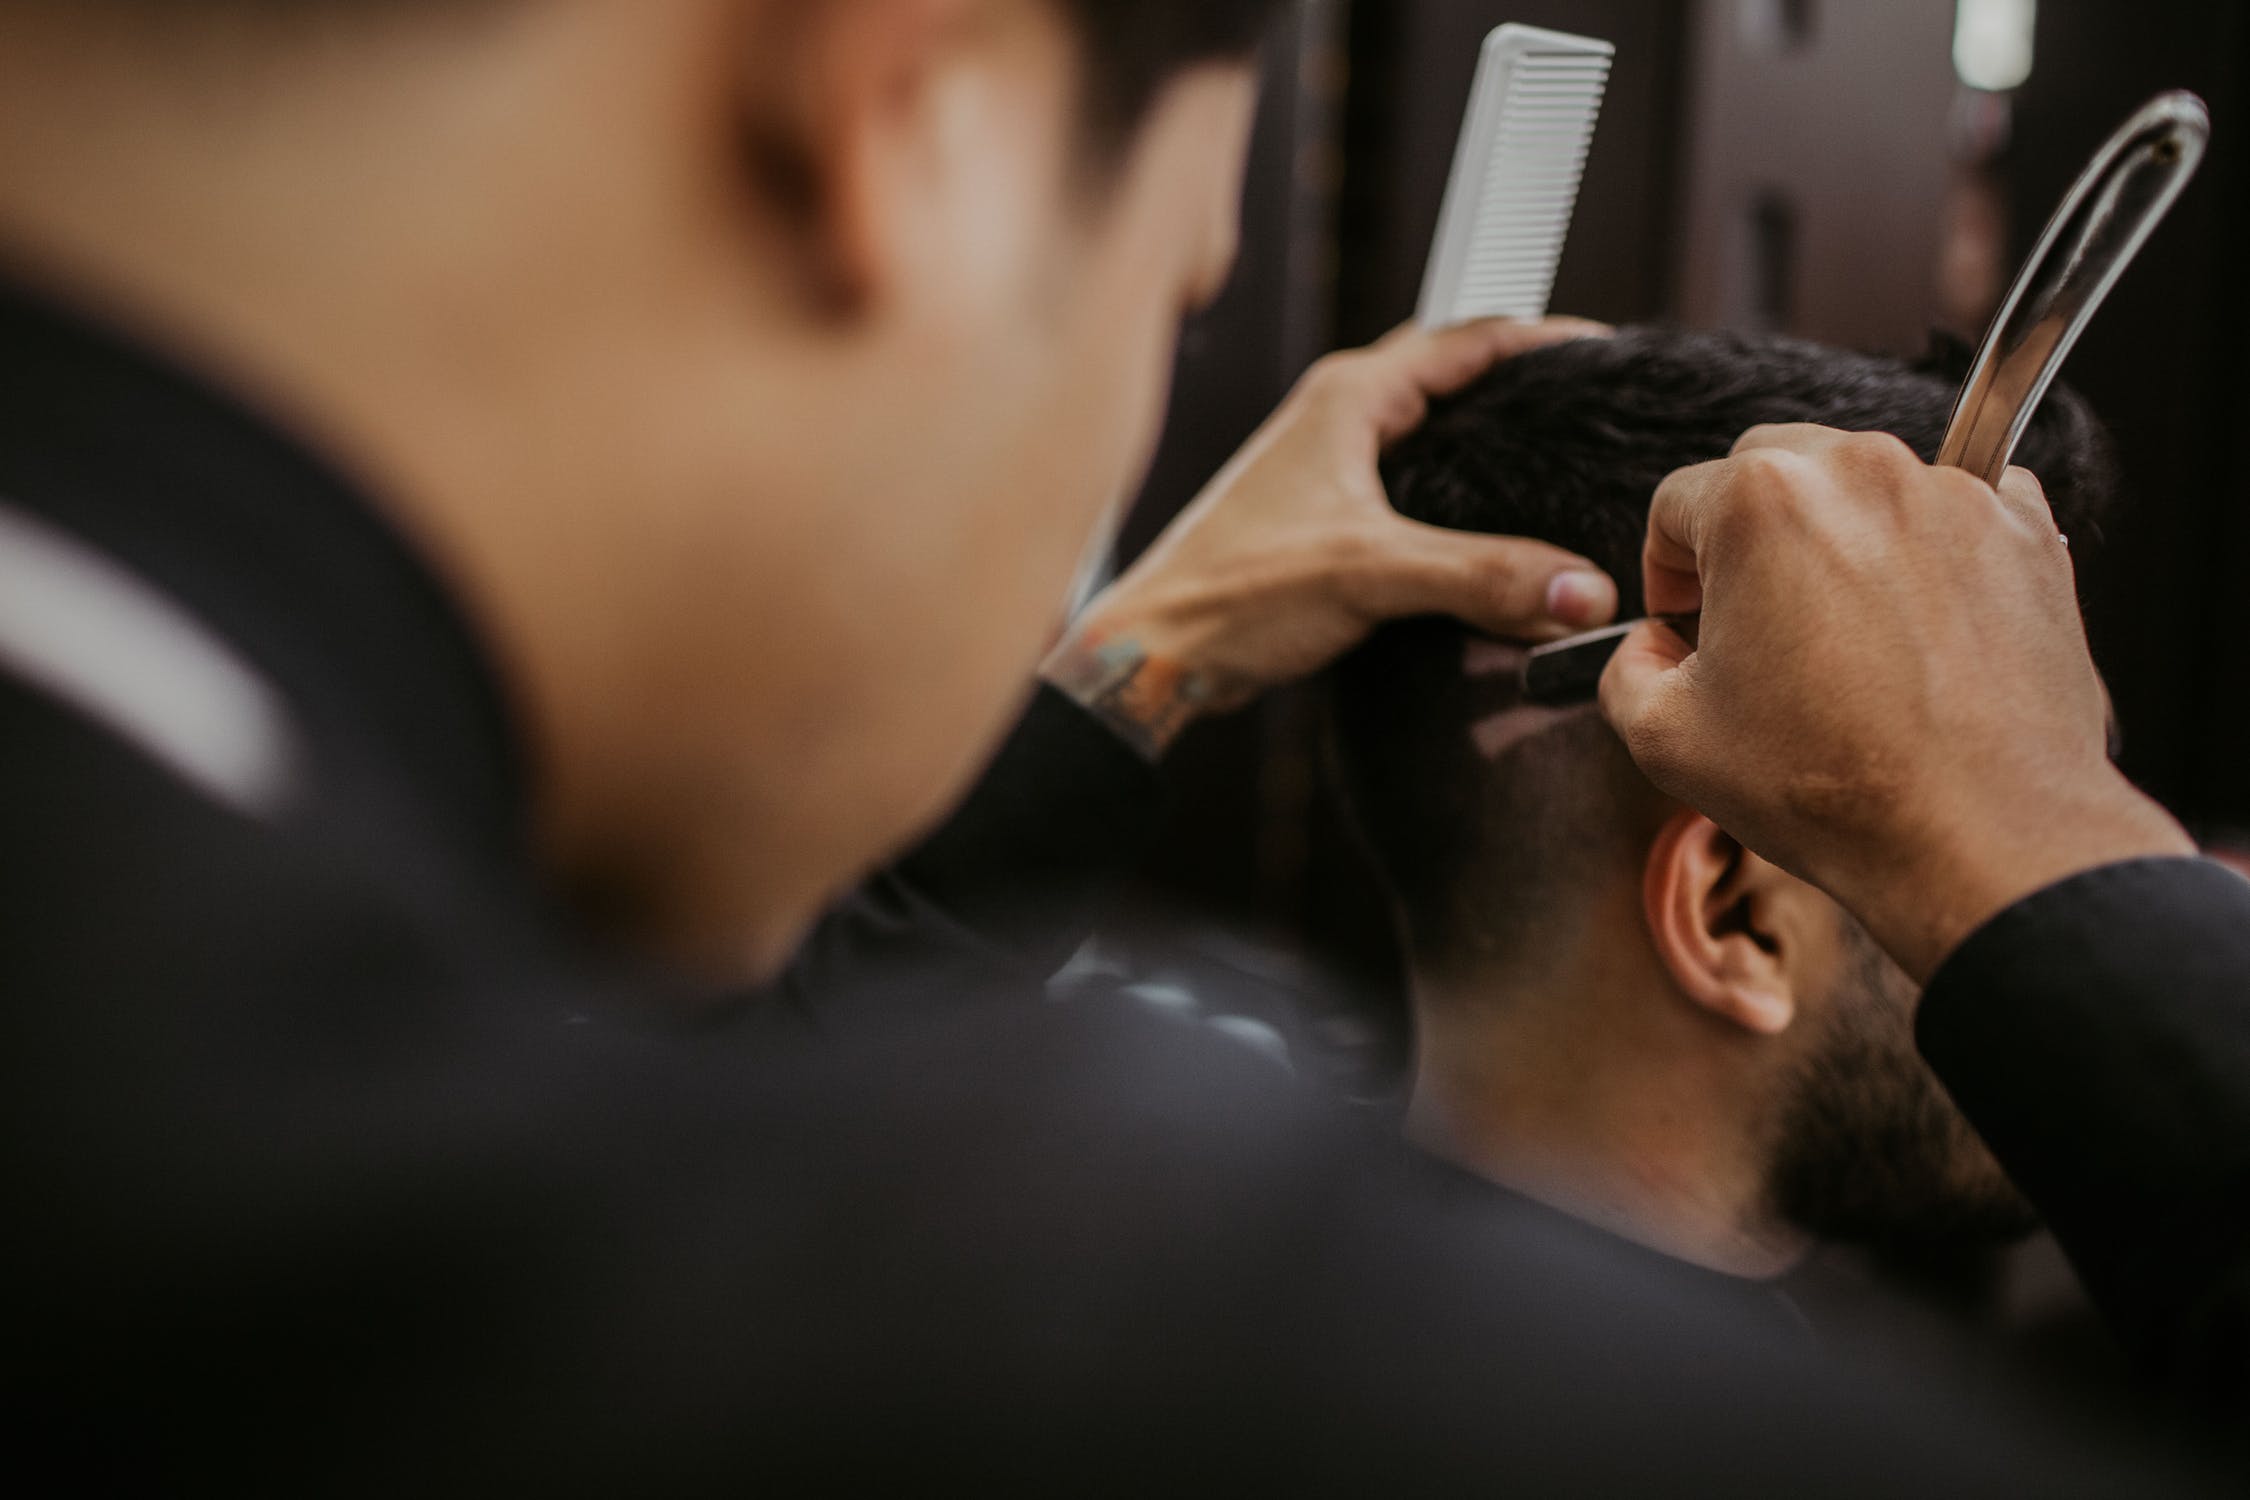 Con muchas medidas de seguridad, los peluqueros y barberos podrán volver a trabajar